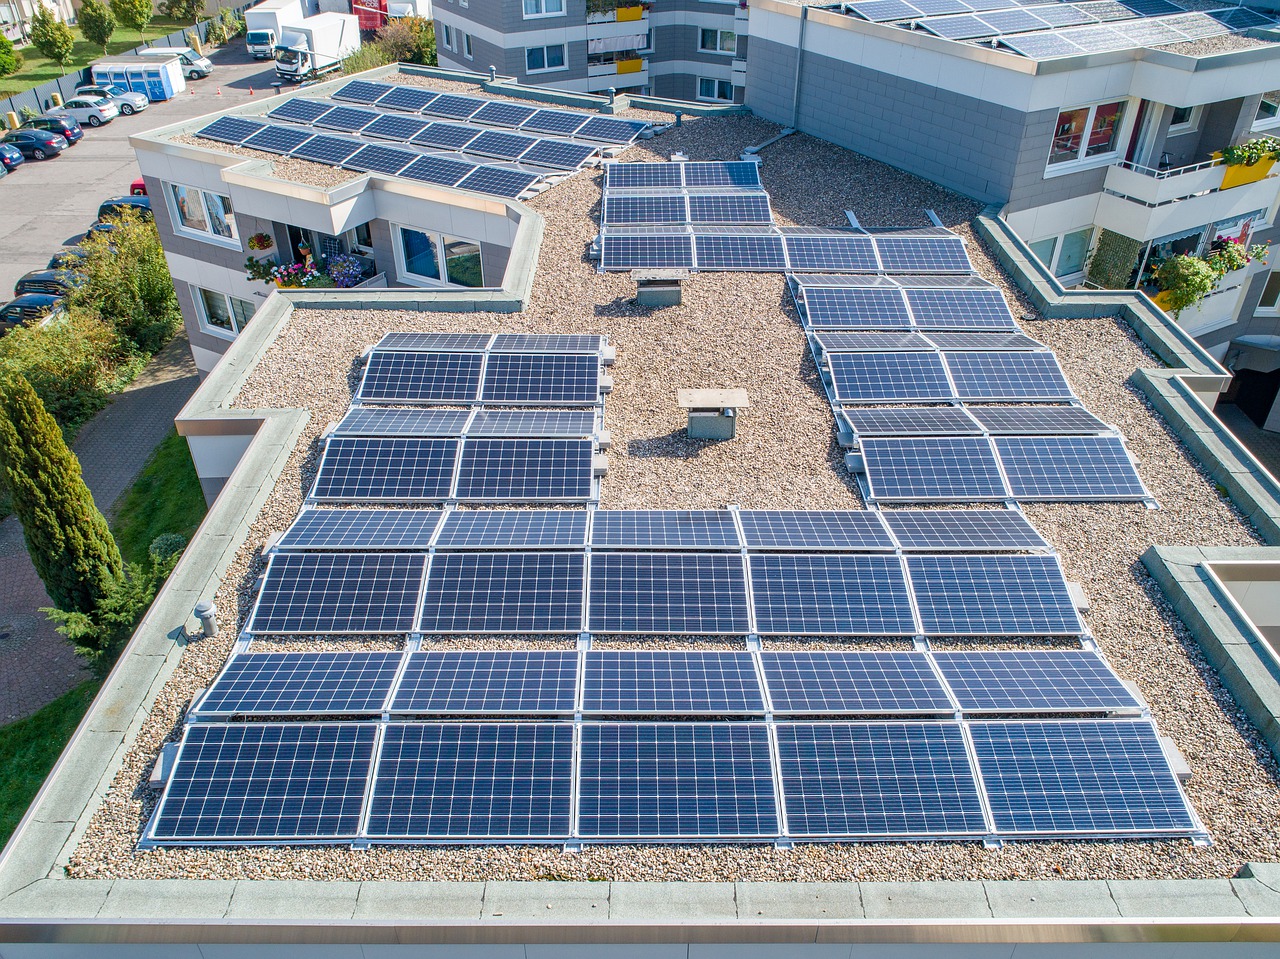 Painéis solares fotovoltaicos instalados sobre telhado em conjunto de prédios